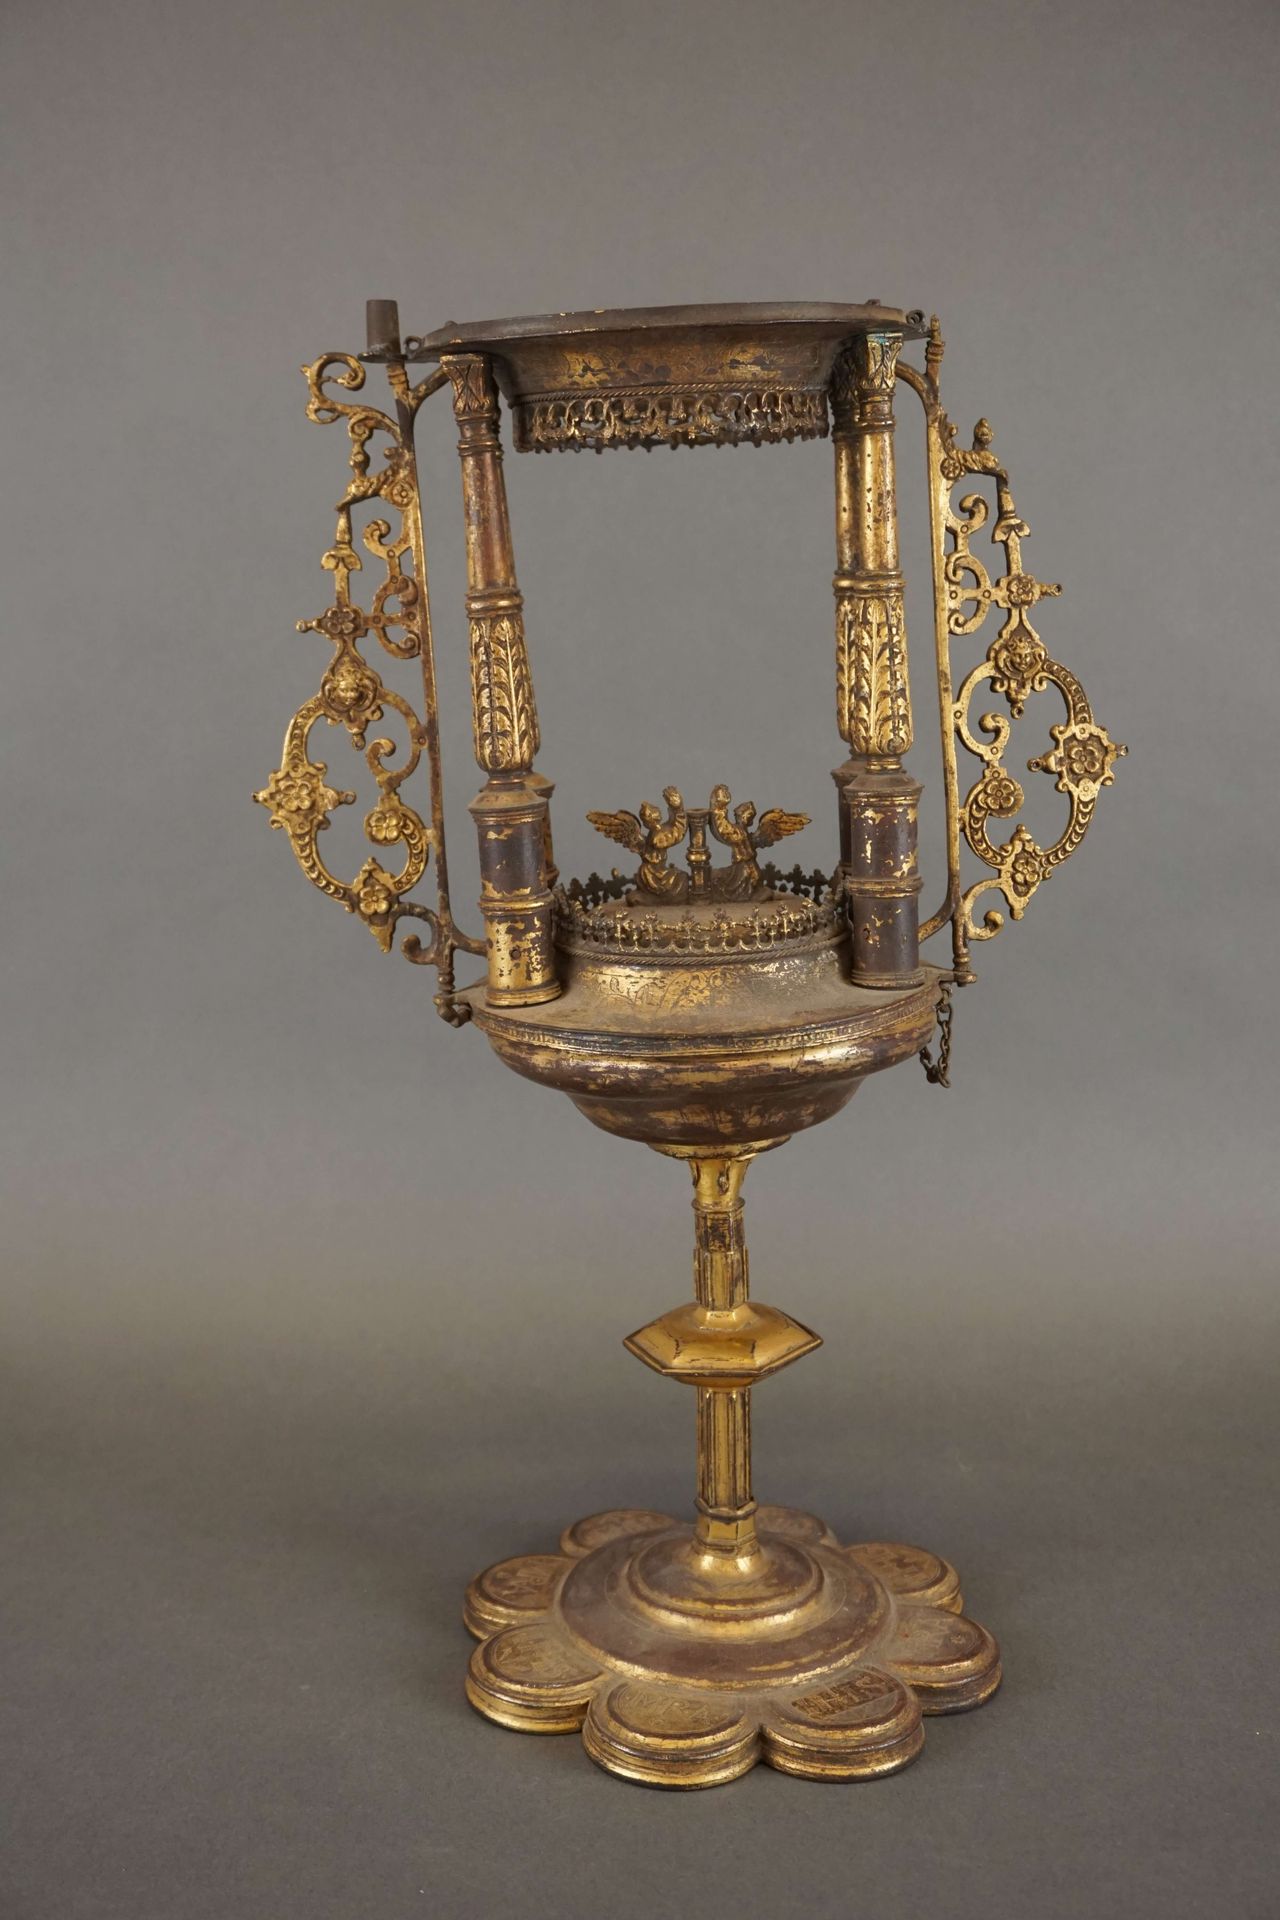 Null Ostensorio in ottone dorato. Incompleto. XVI secolo. Altezza: 40 cm